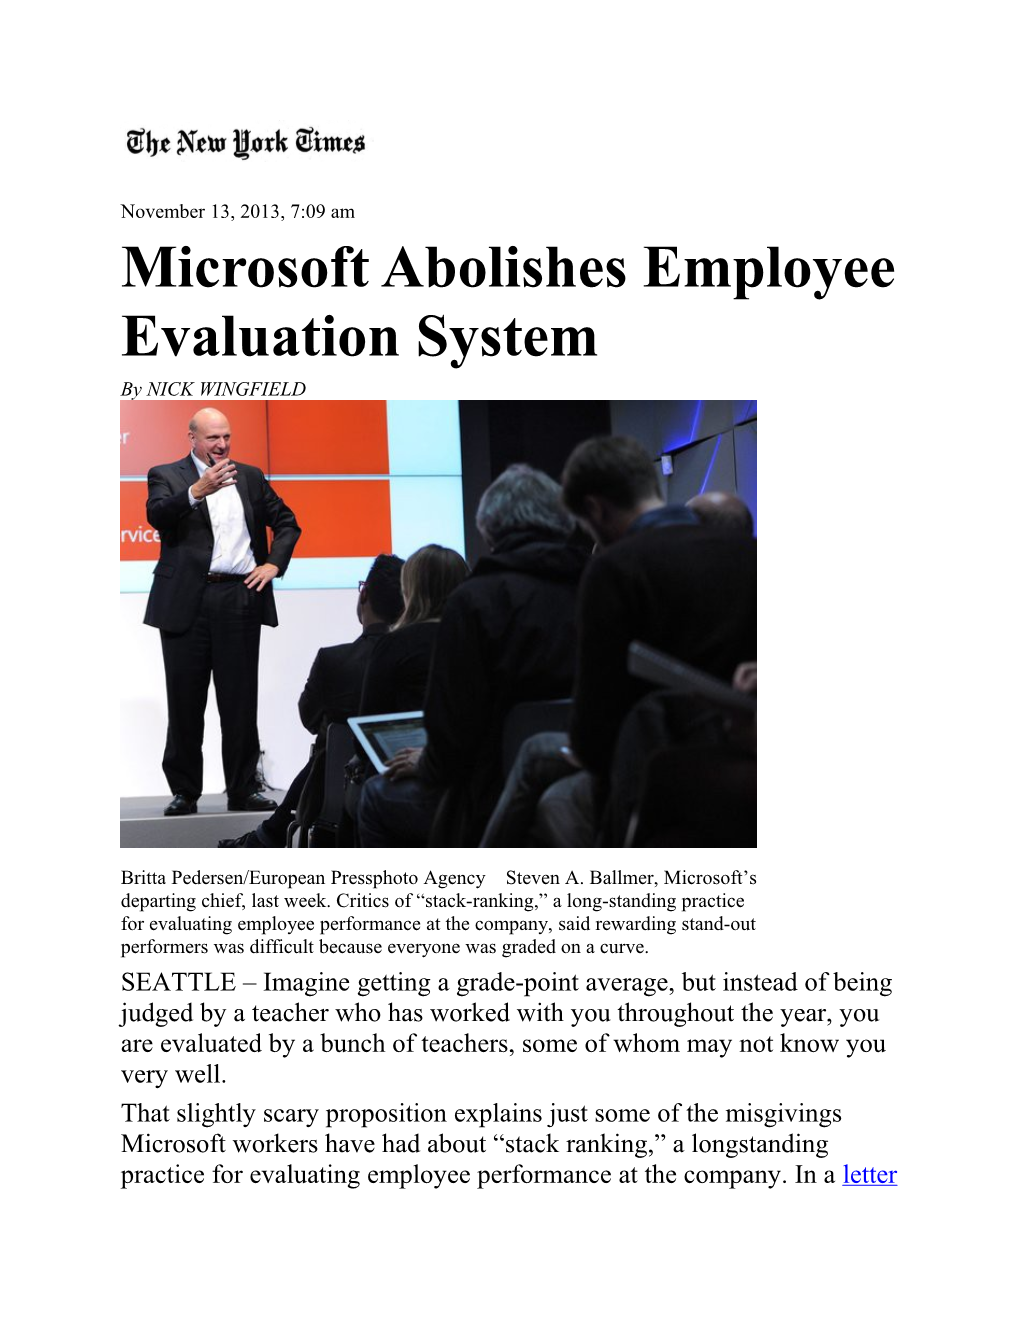 Microsoft Abolishes Employee Evaluation System